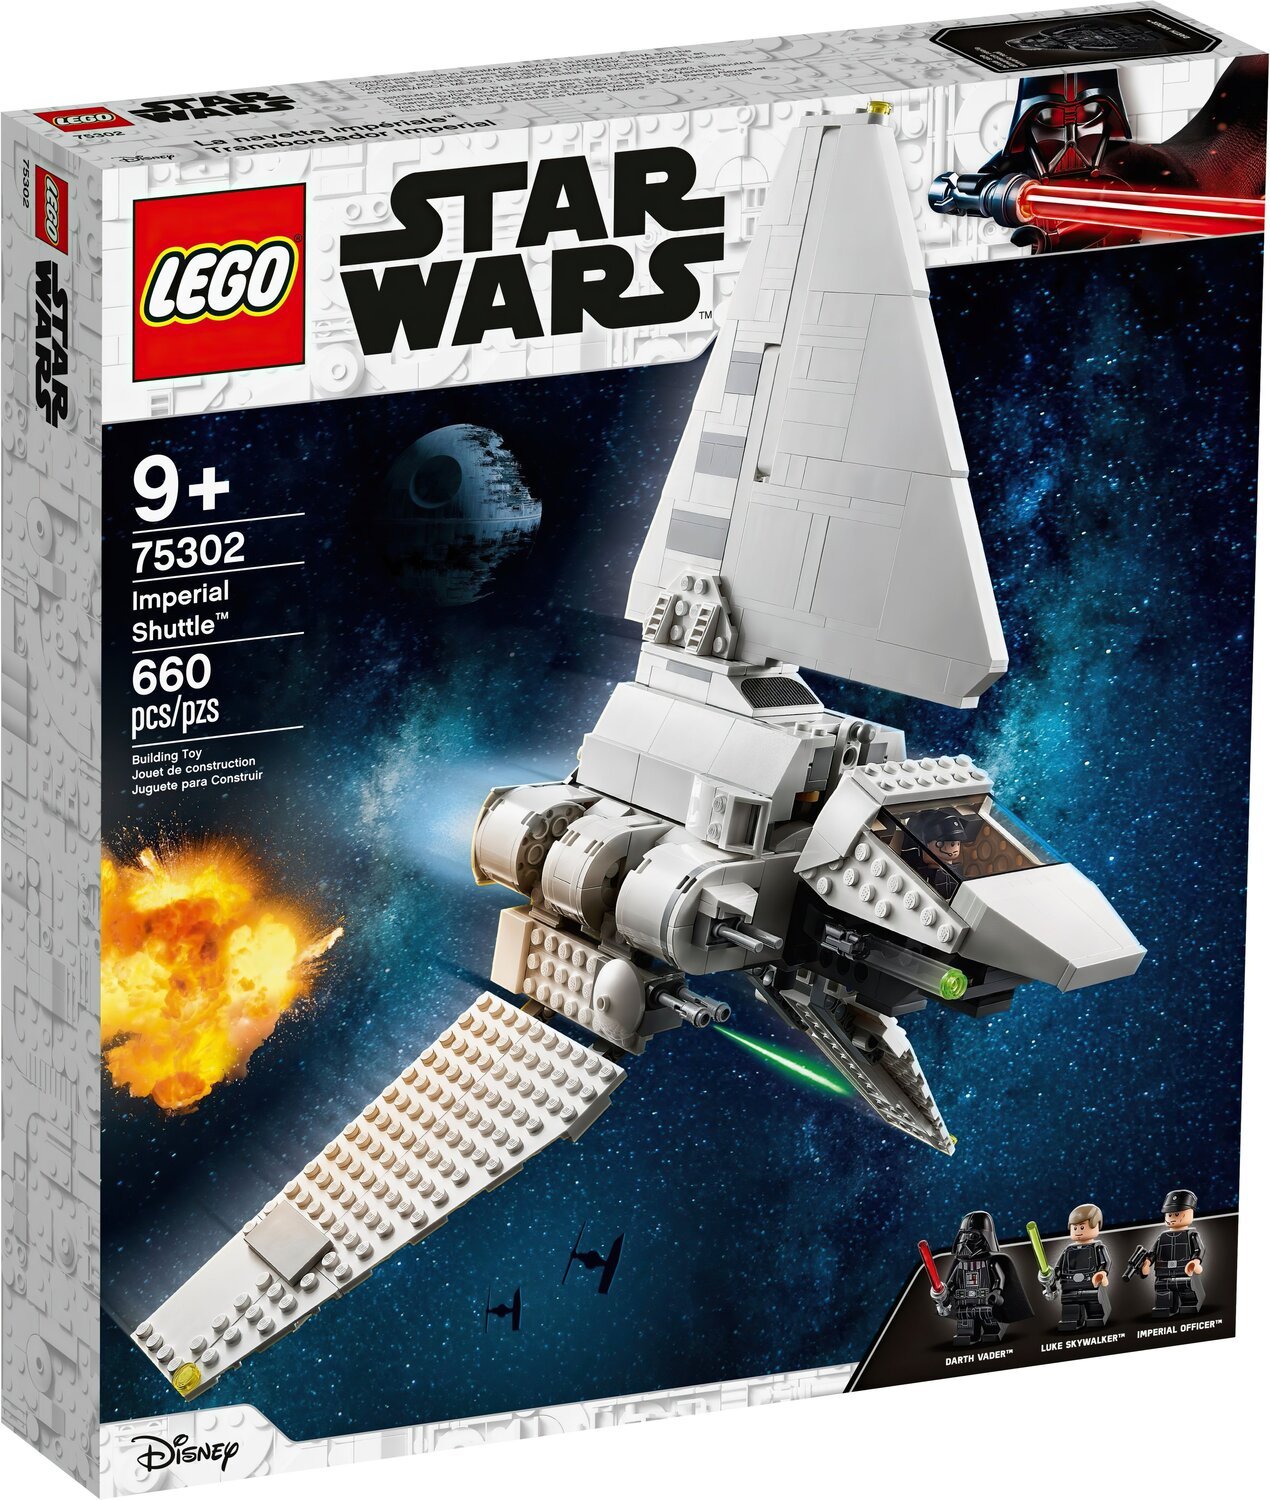 LEGO 75302 Star Wars Імперський шатлфото